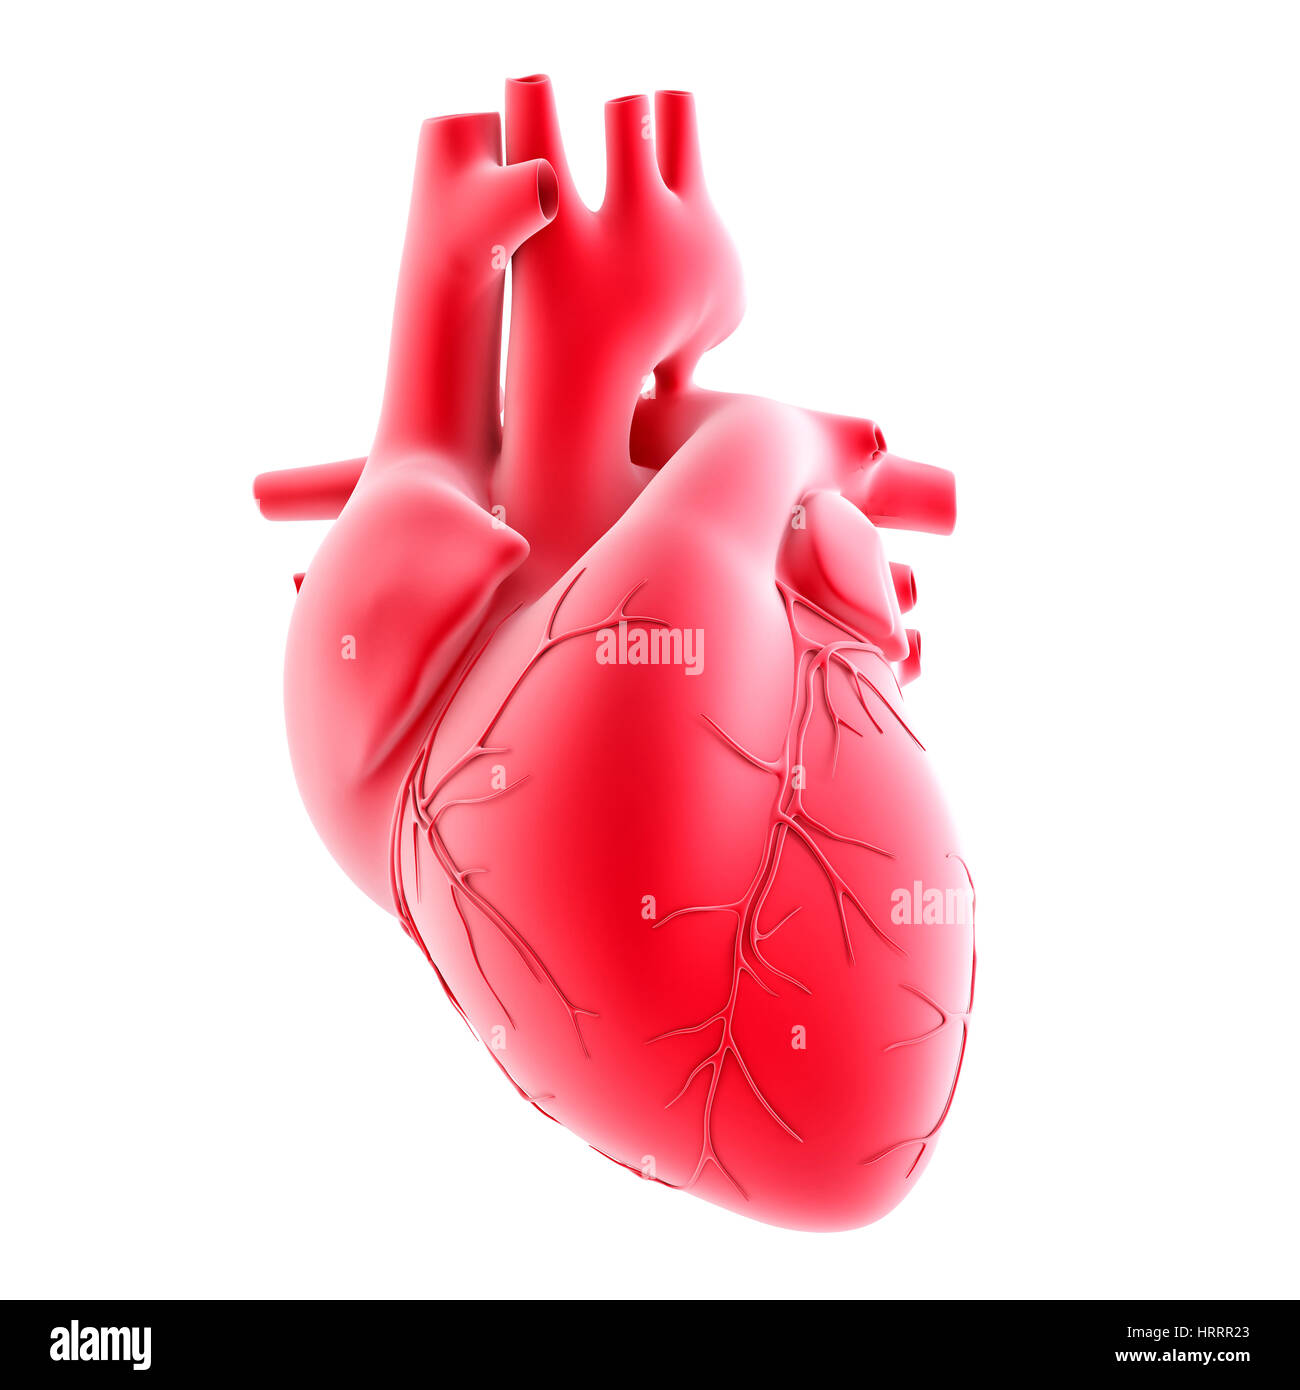 Il cuore umano. 3d'illustrazione. Isolato, contiene il tracciato di ritaglio Foto Stock